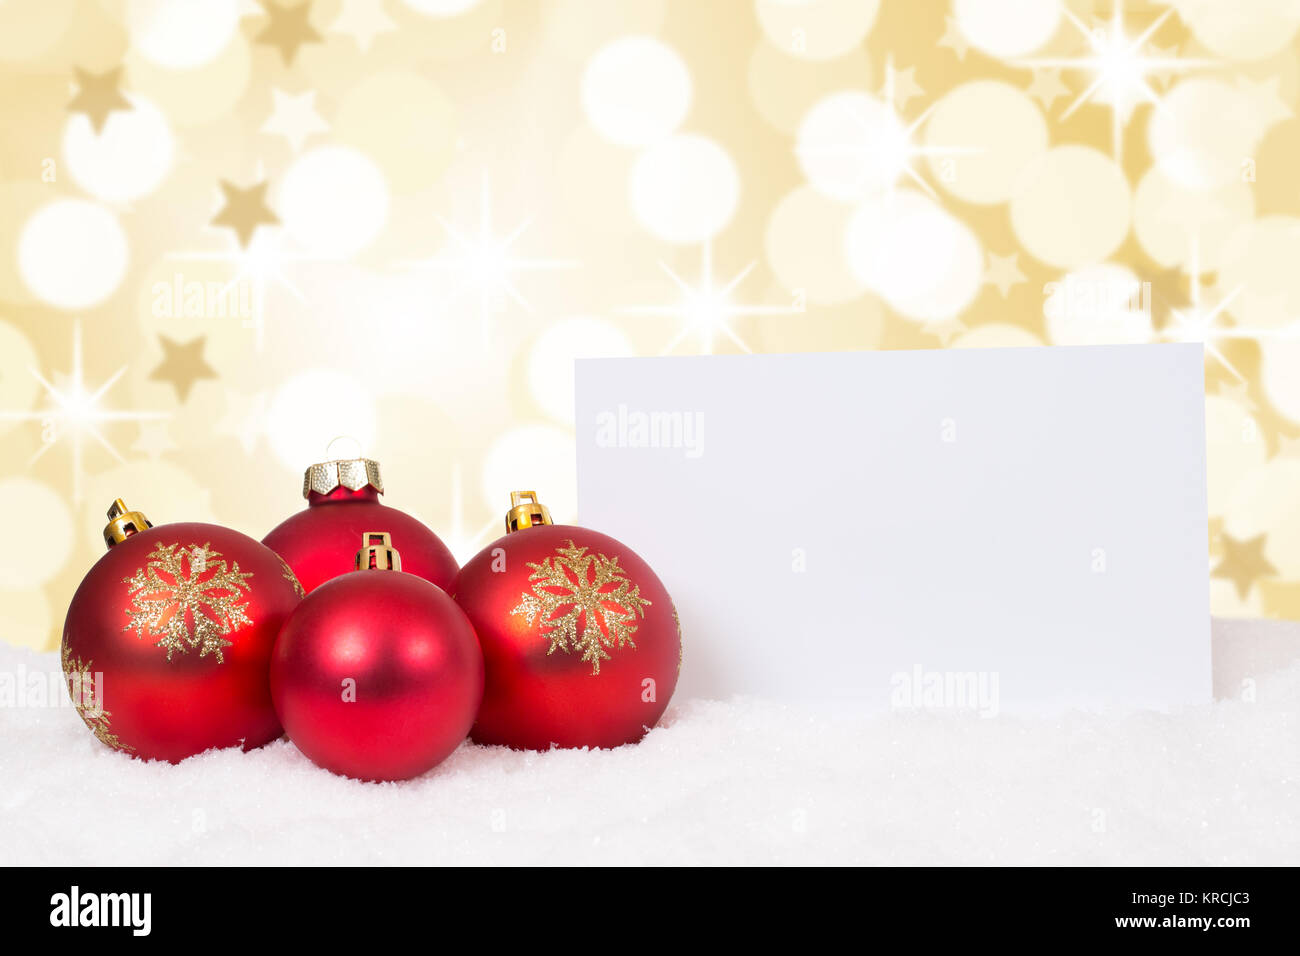 Rote Weihnachtskugeln Frohe Weihnachten Sterne Weihnachtskarte Wünsche Karte Textfreiraum Copyspace Stock Photo